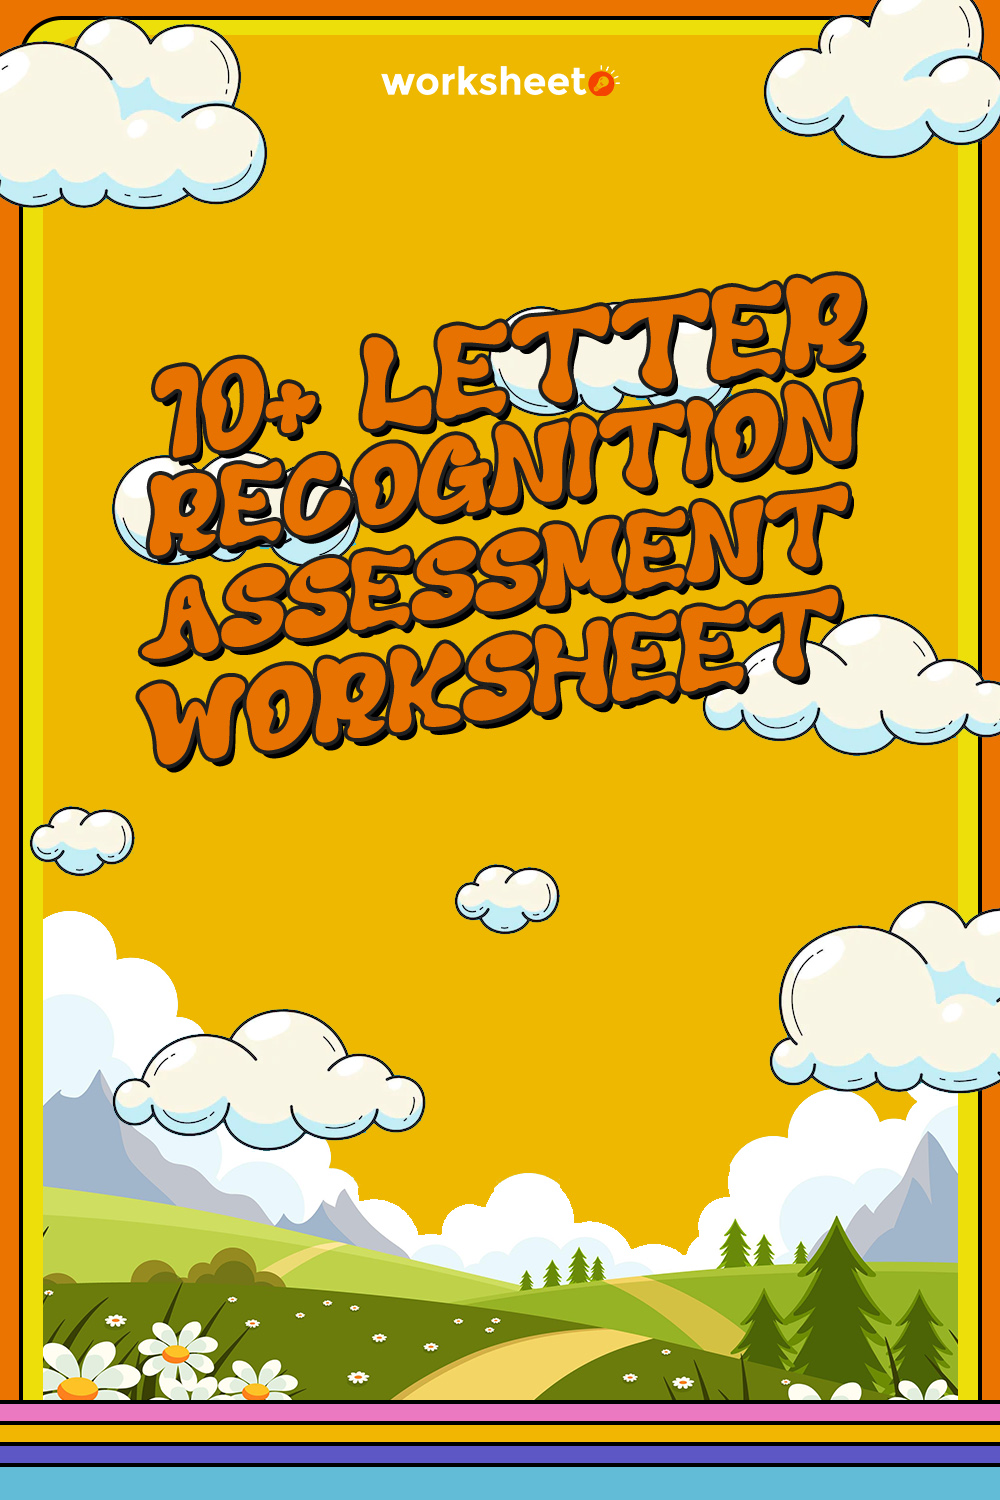 16 Images of Letter Recognition Assessment Worksheet